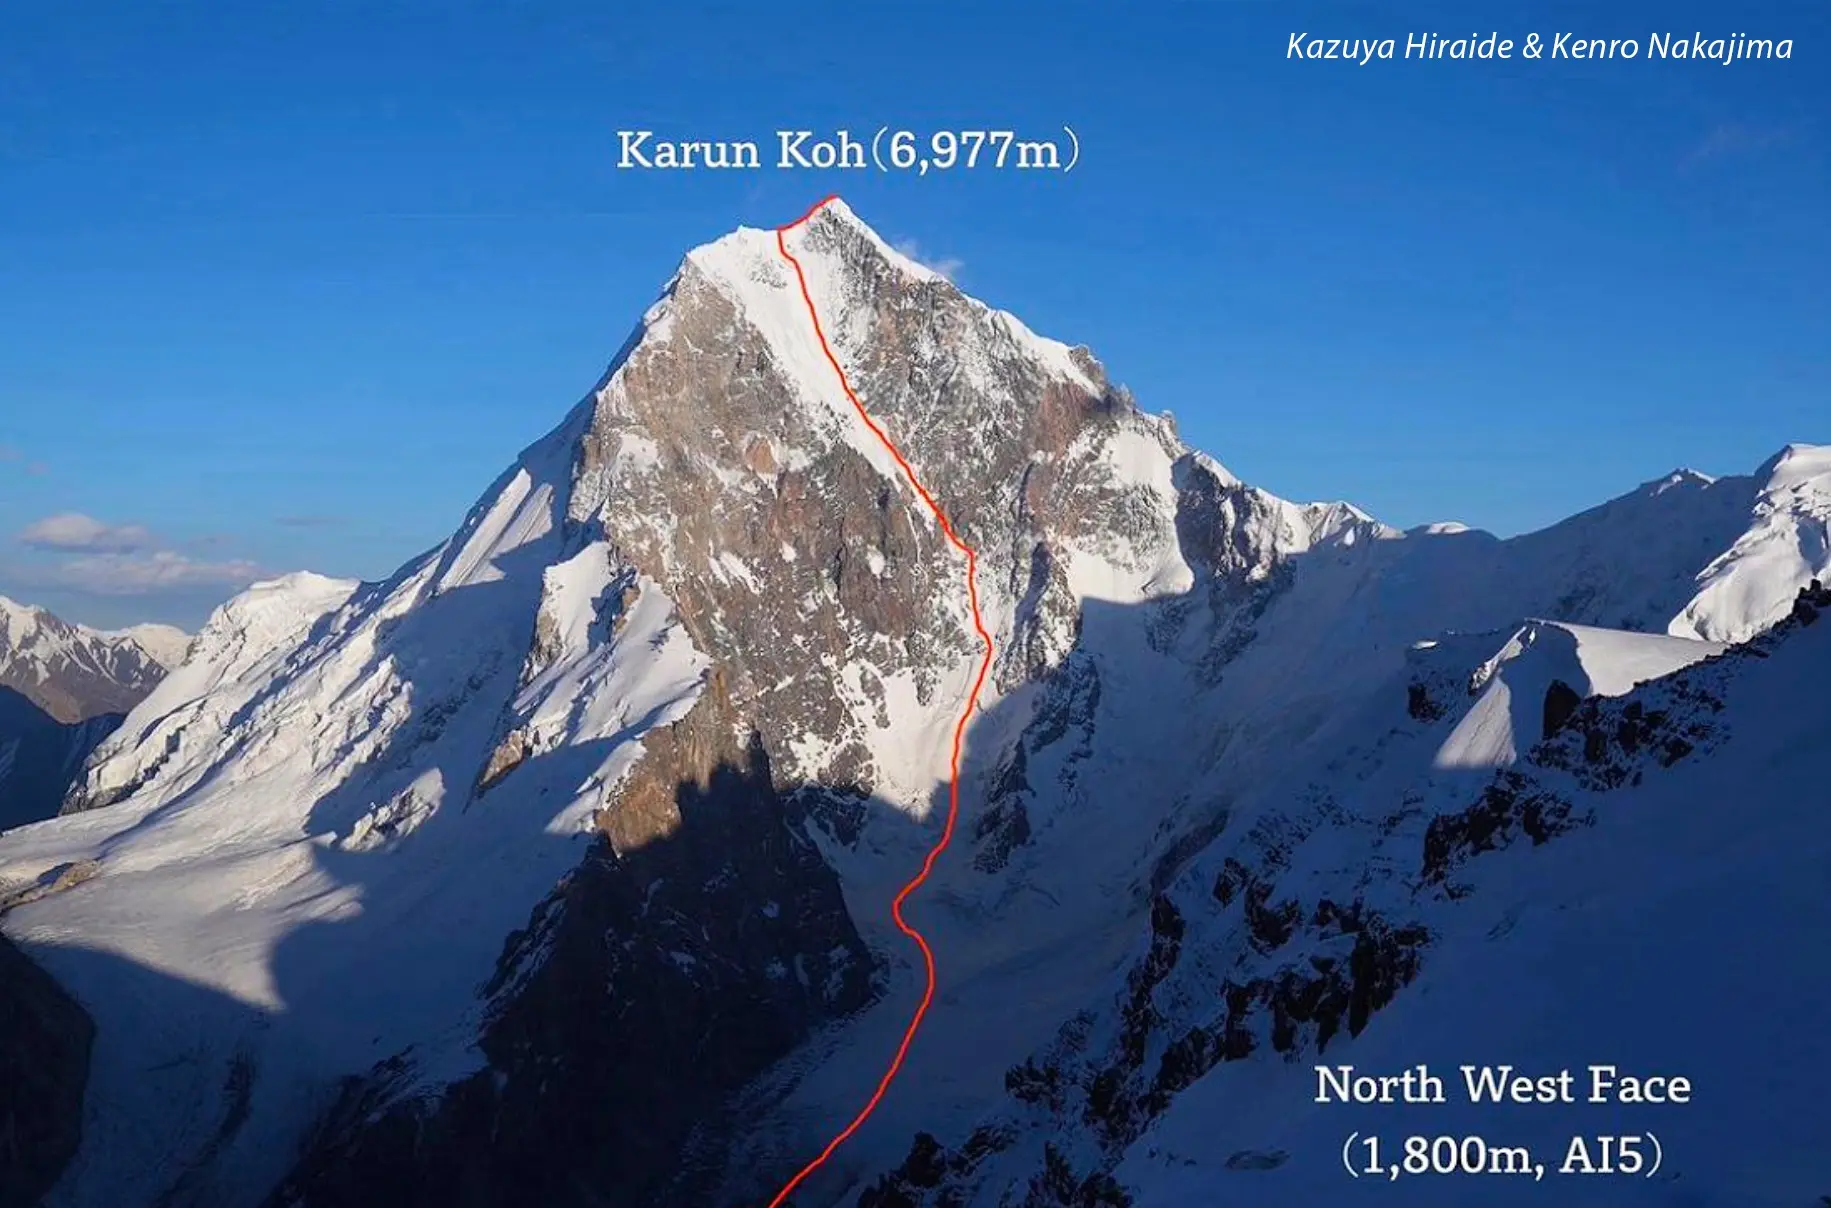 перший маршрут на північно-західній стіні гори Карун-Кох в Пакистані. Кадзуя Хірайде (Kazuya Hiraide) та Кенро Накадзіма (Kenro Nakajima). вересень 2022 року. Фото: Kazuya Hiraide